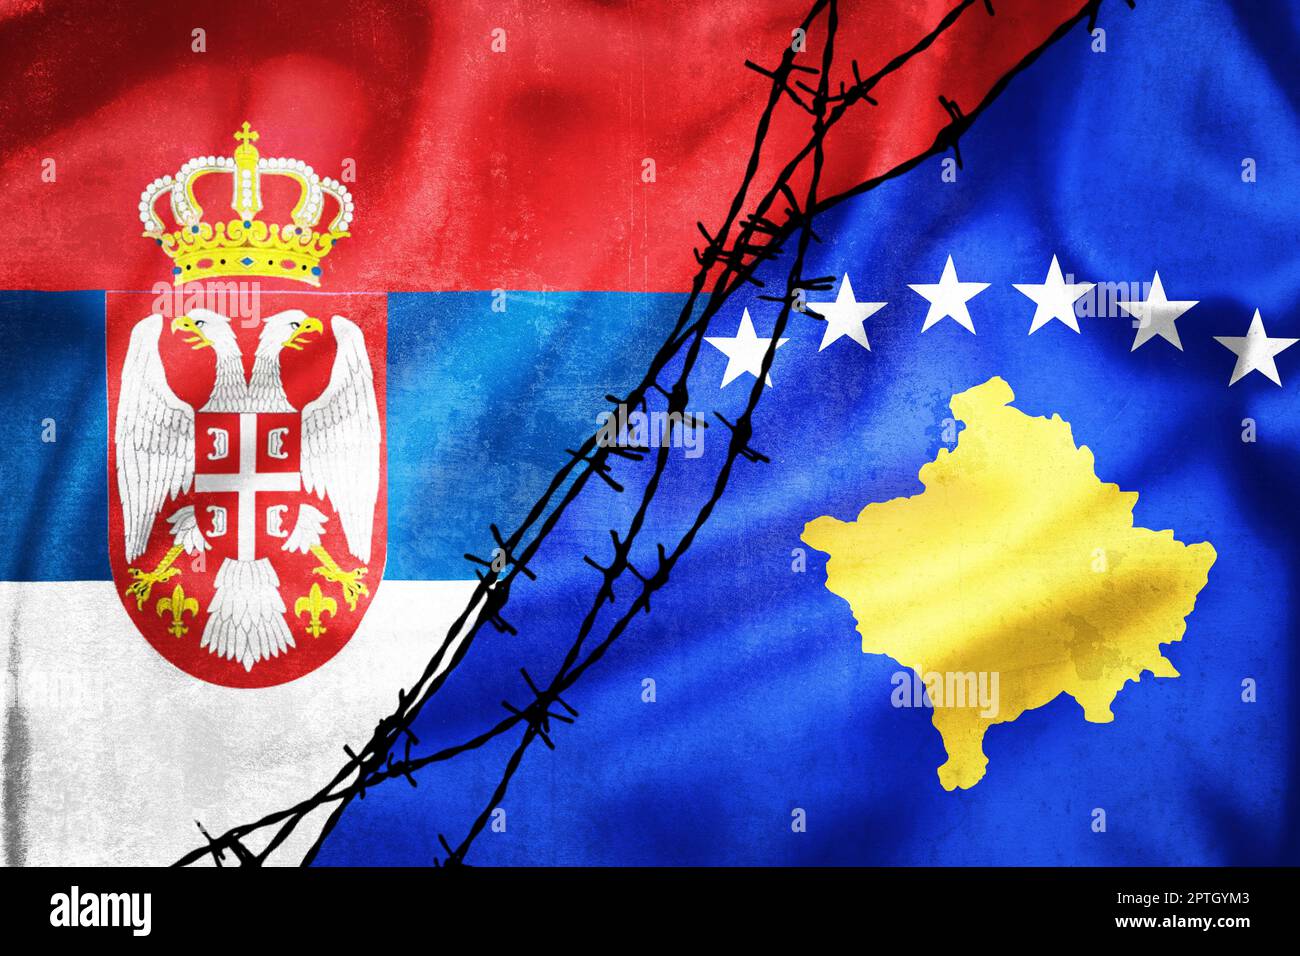 Grunge Flaggen von Serbien und Kosovo geteilt durch Stacheldraht Illustration, Konzept der angespannten Beziehungen zwischen Serbien und Kosovo Stockfoto